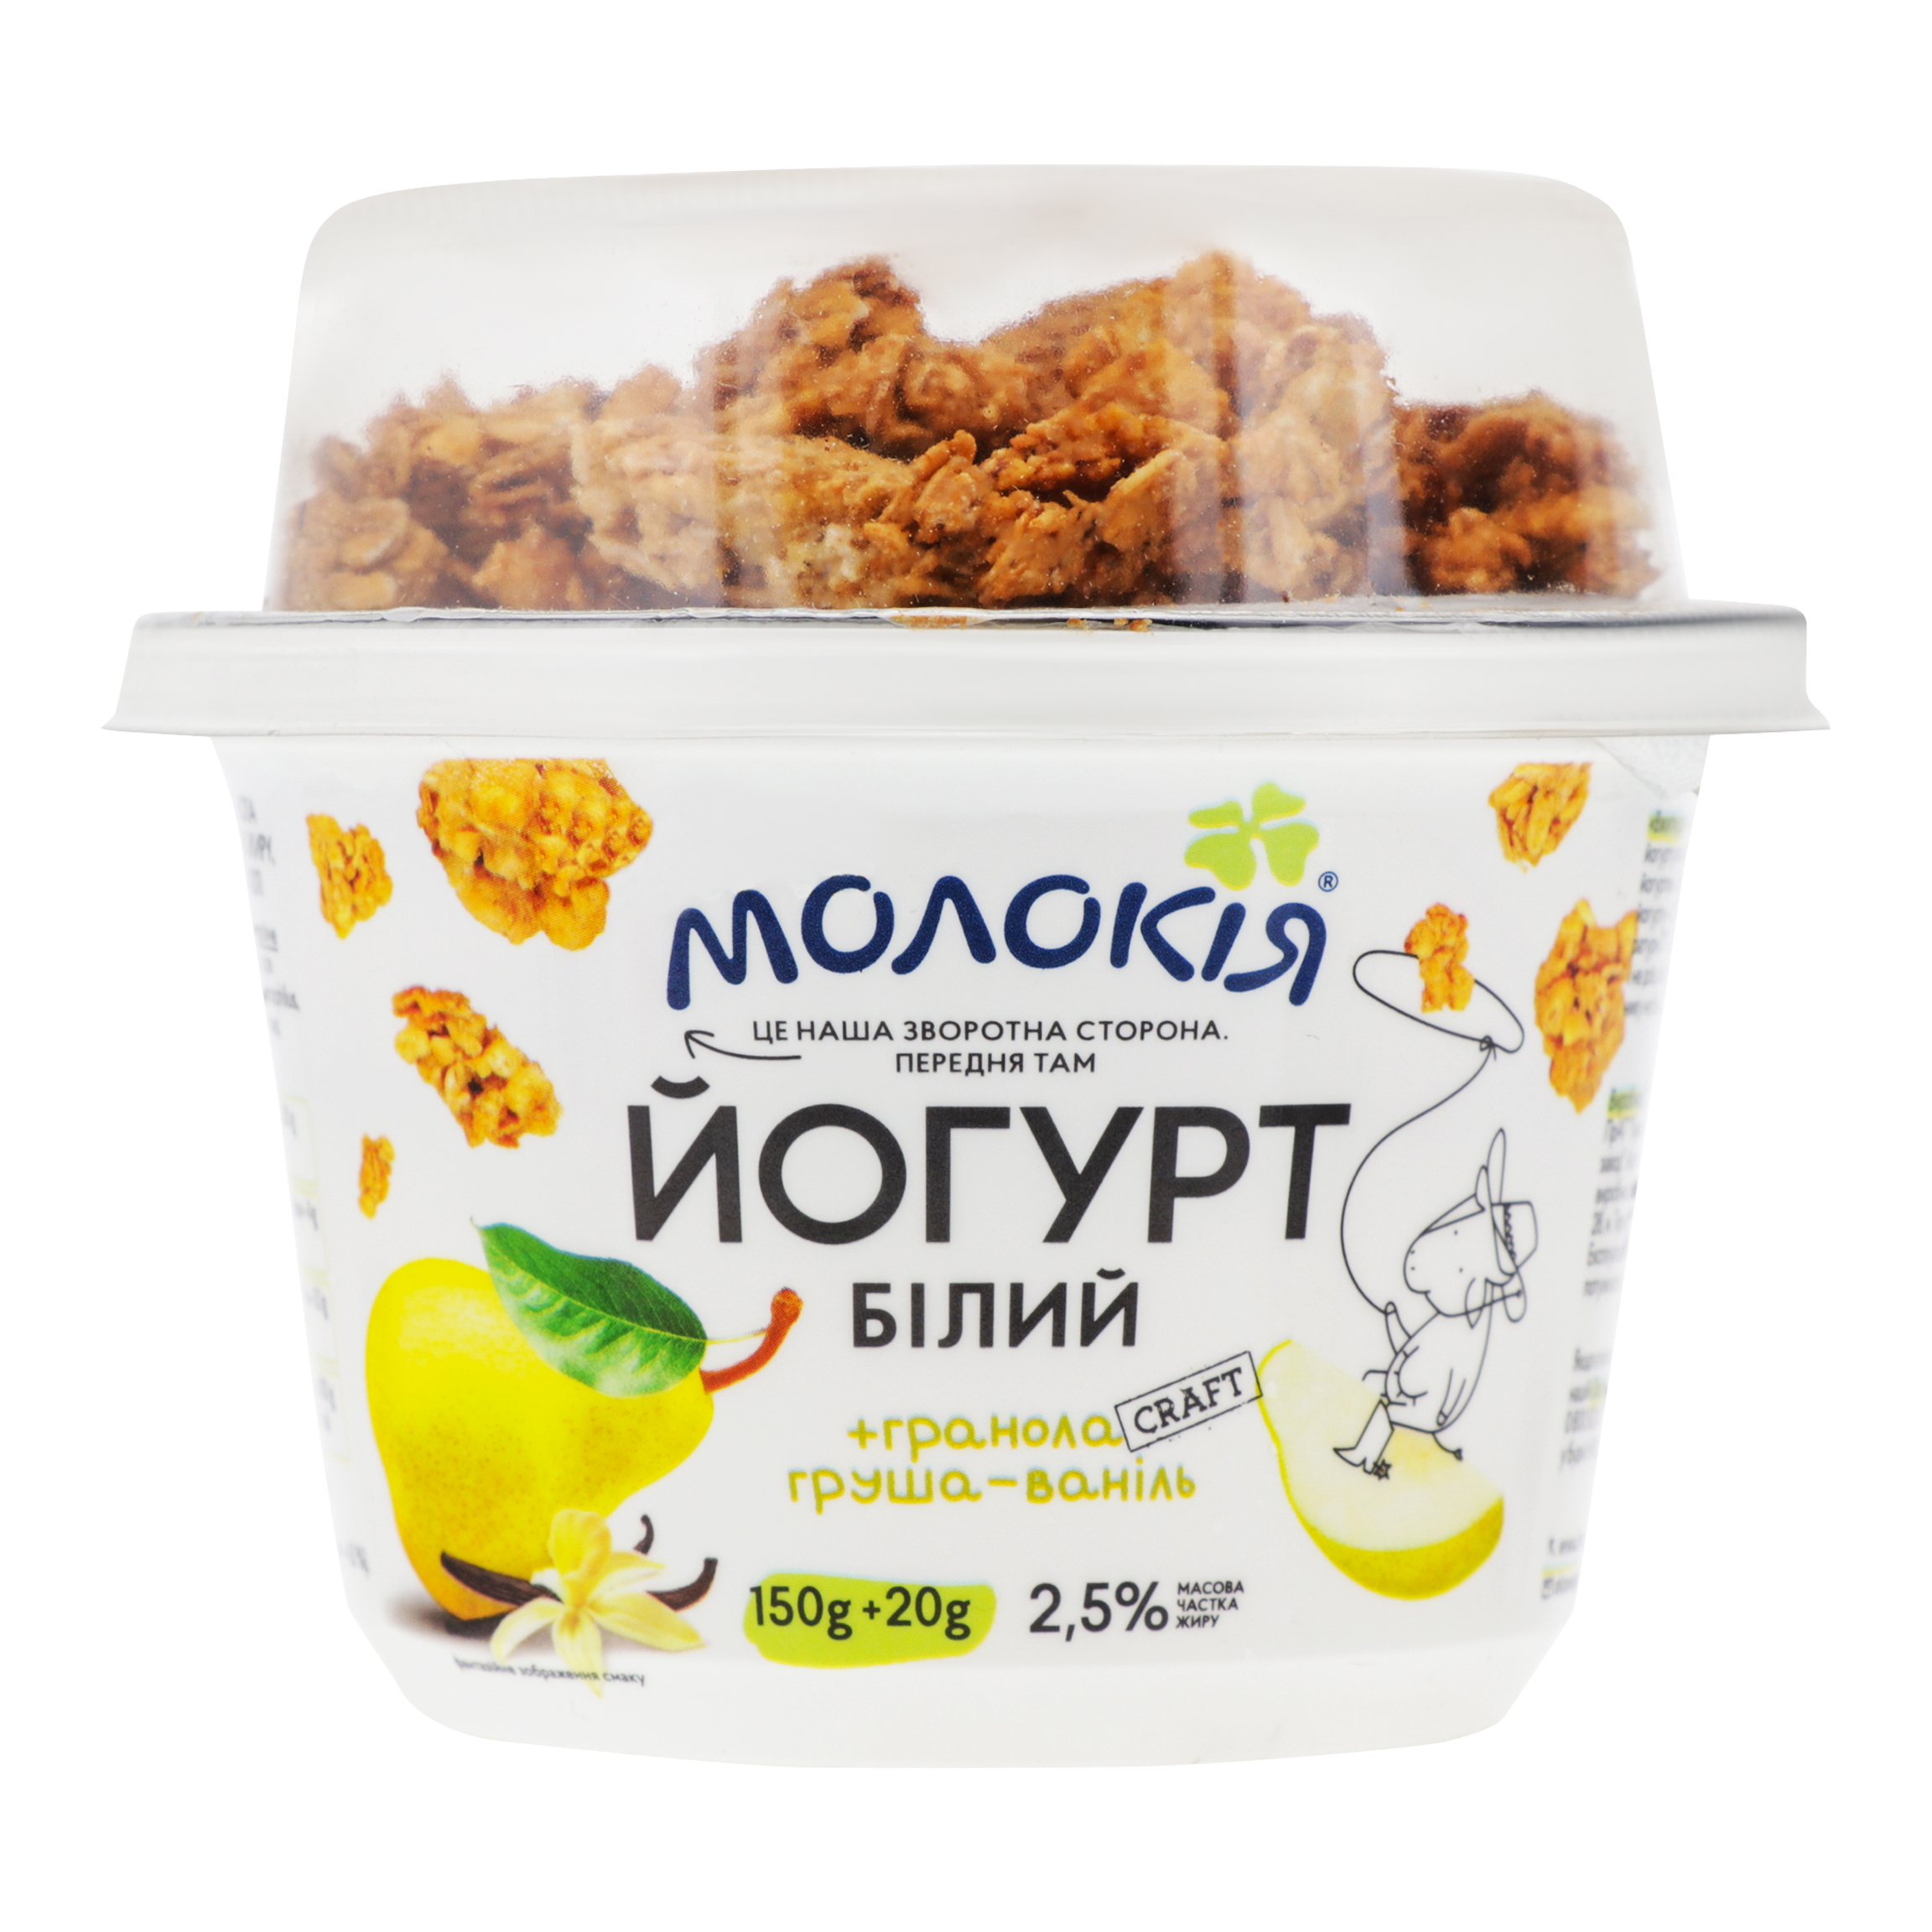 White yogurt Molokiya + granola Pear-vanilla 2,5% cup 170g